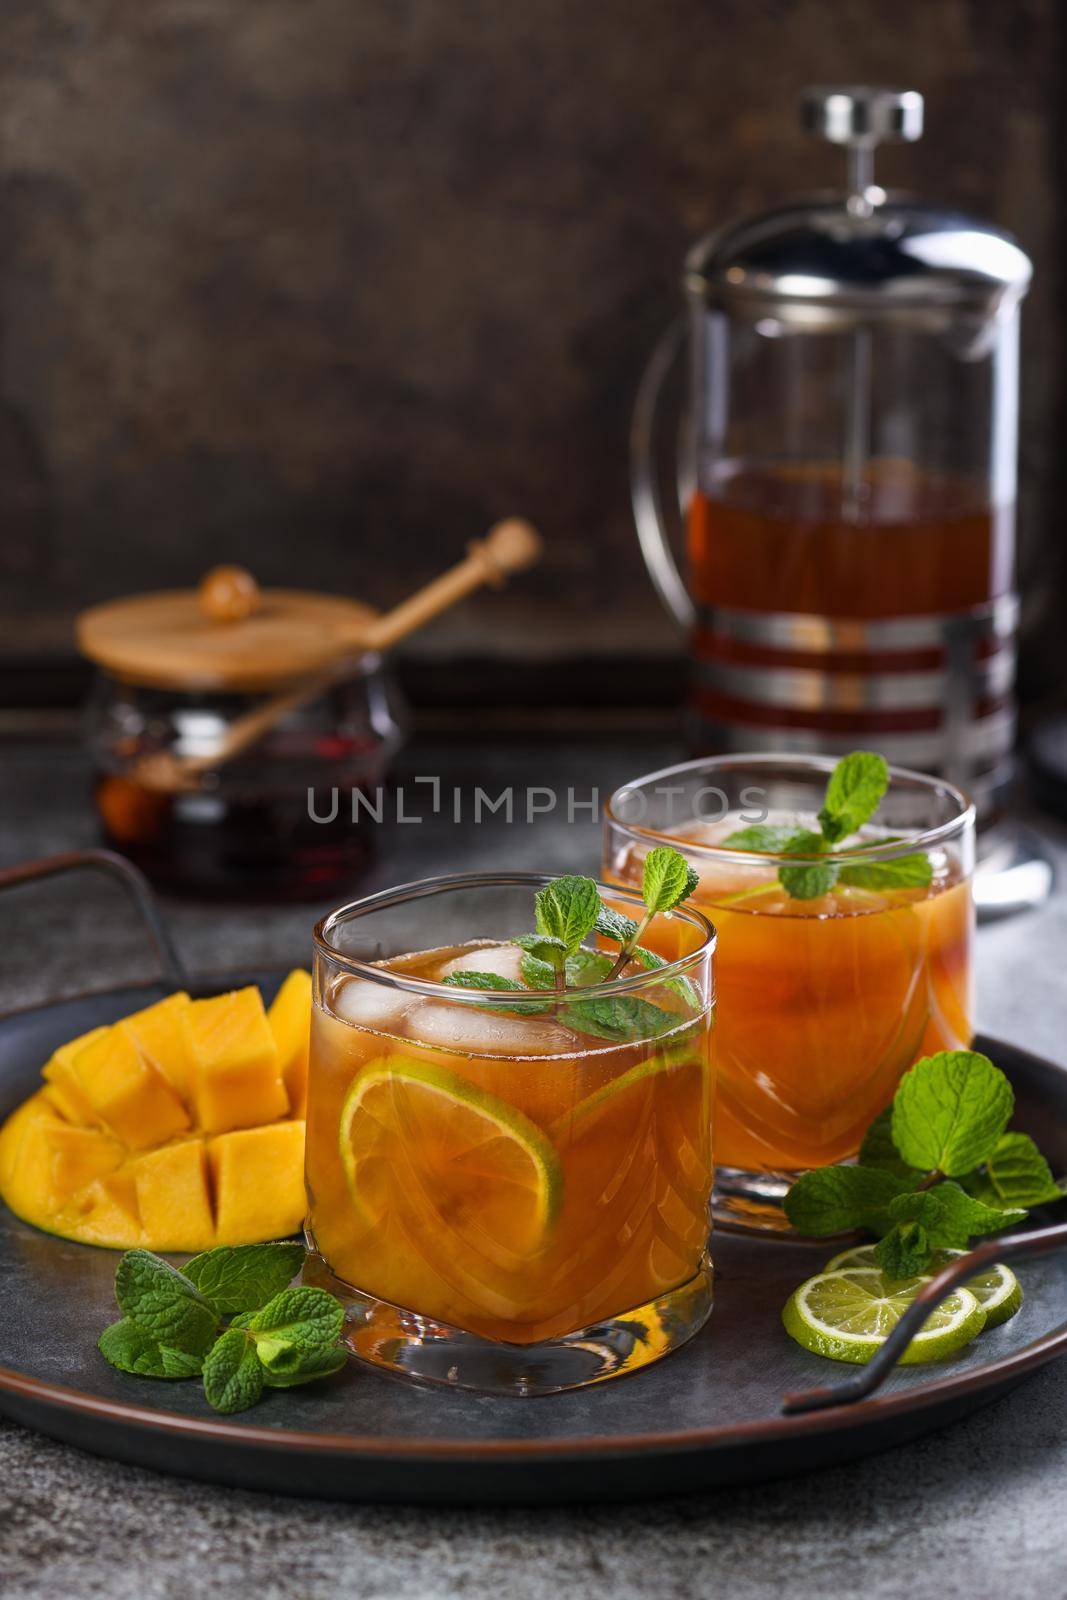  Mango Iced Tea by Apolonia